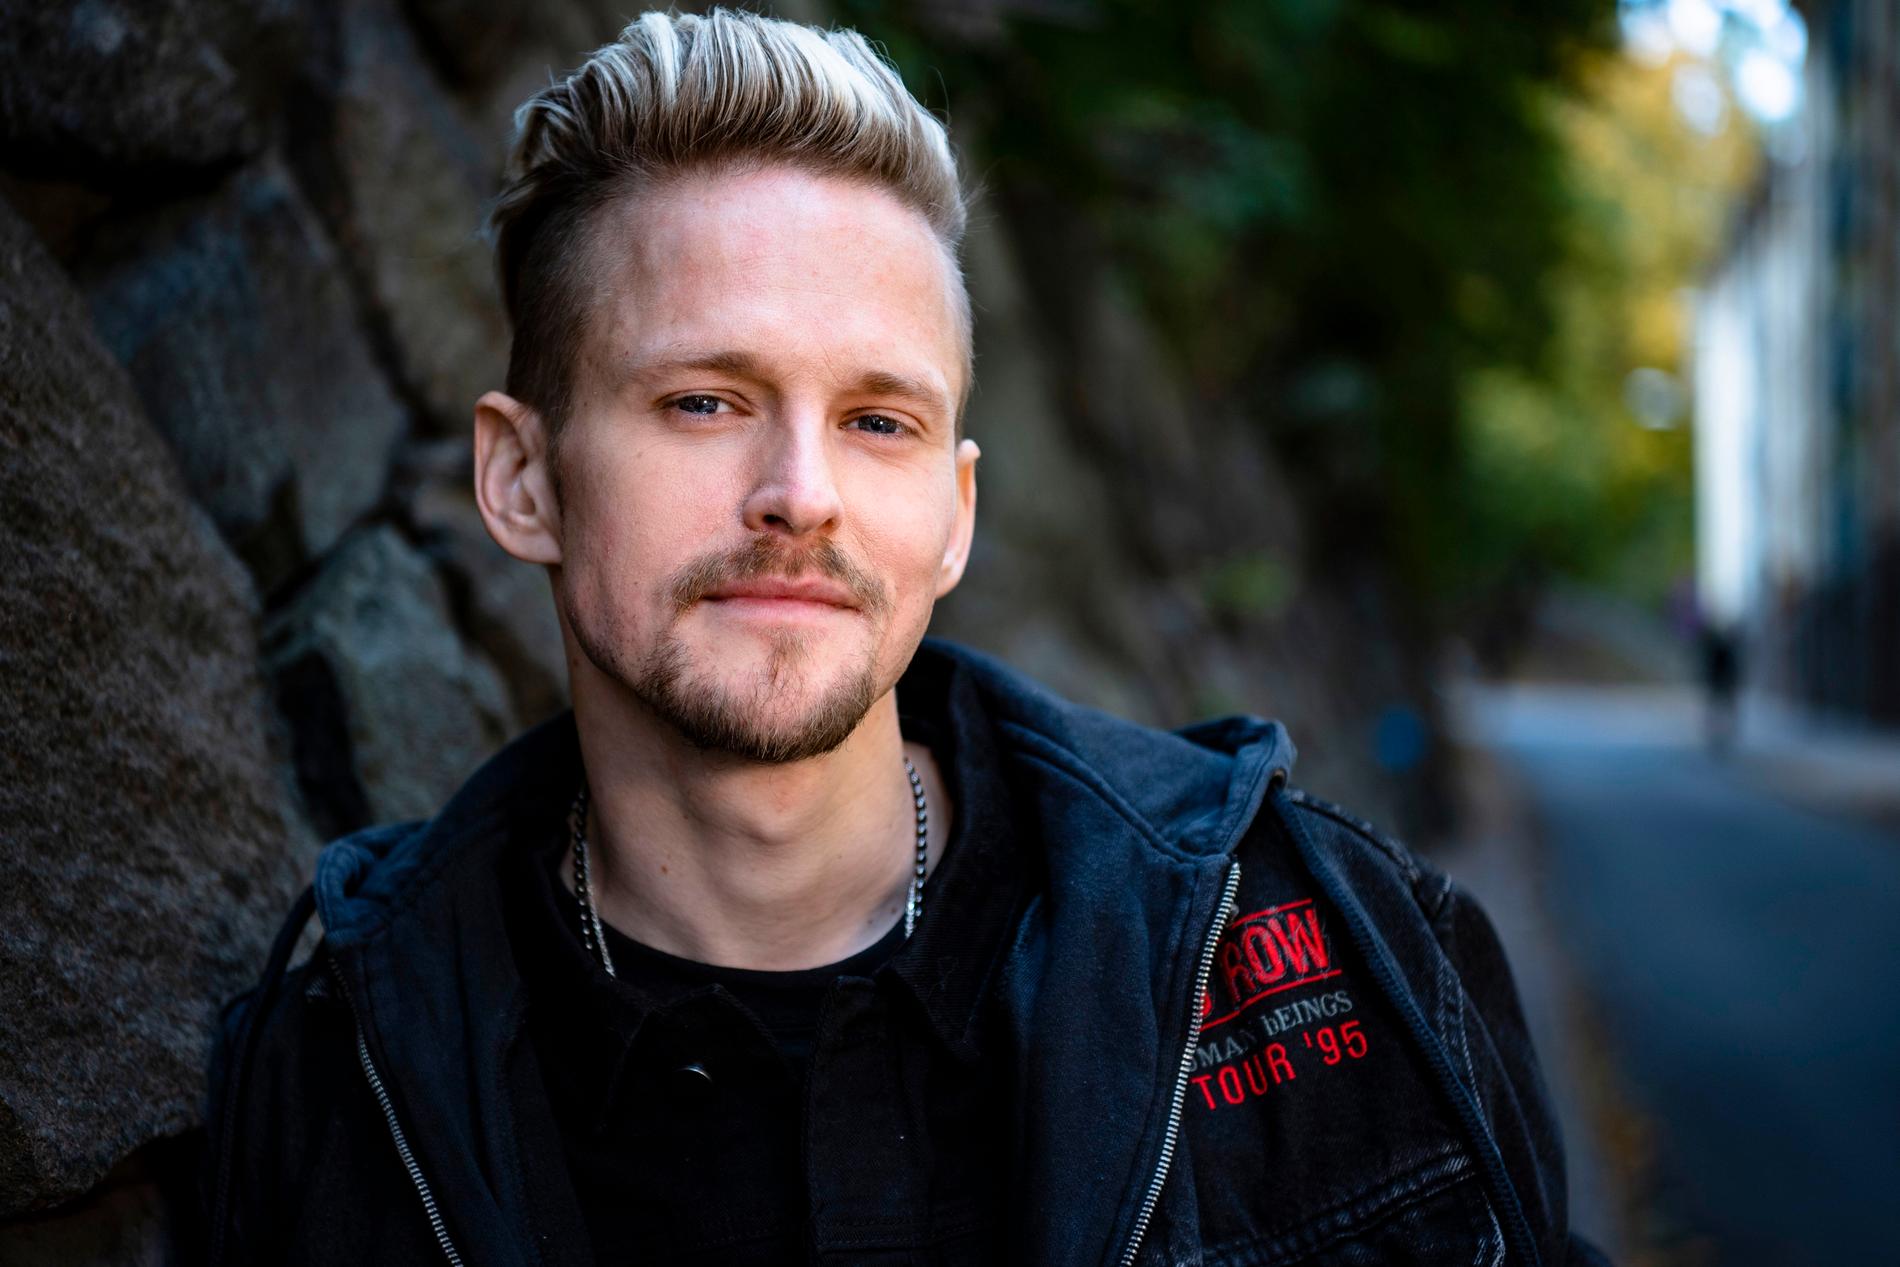 Svenske Erik Grönwall blev ny sångare i Skid Row och räddade det ikoniska amerikanska bandet från att falla i glömska.